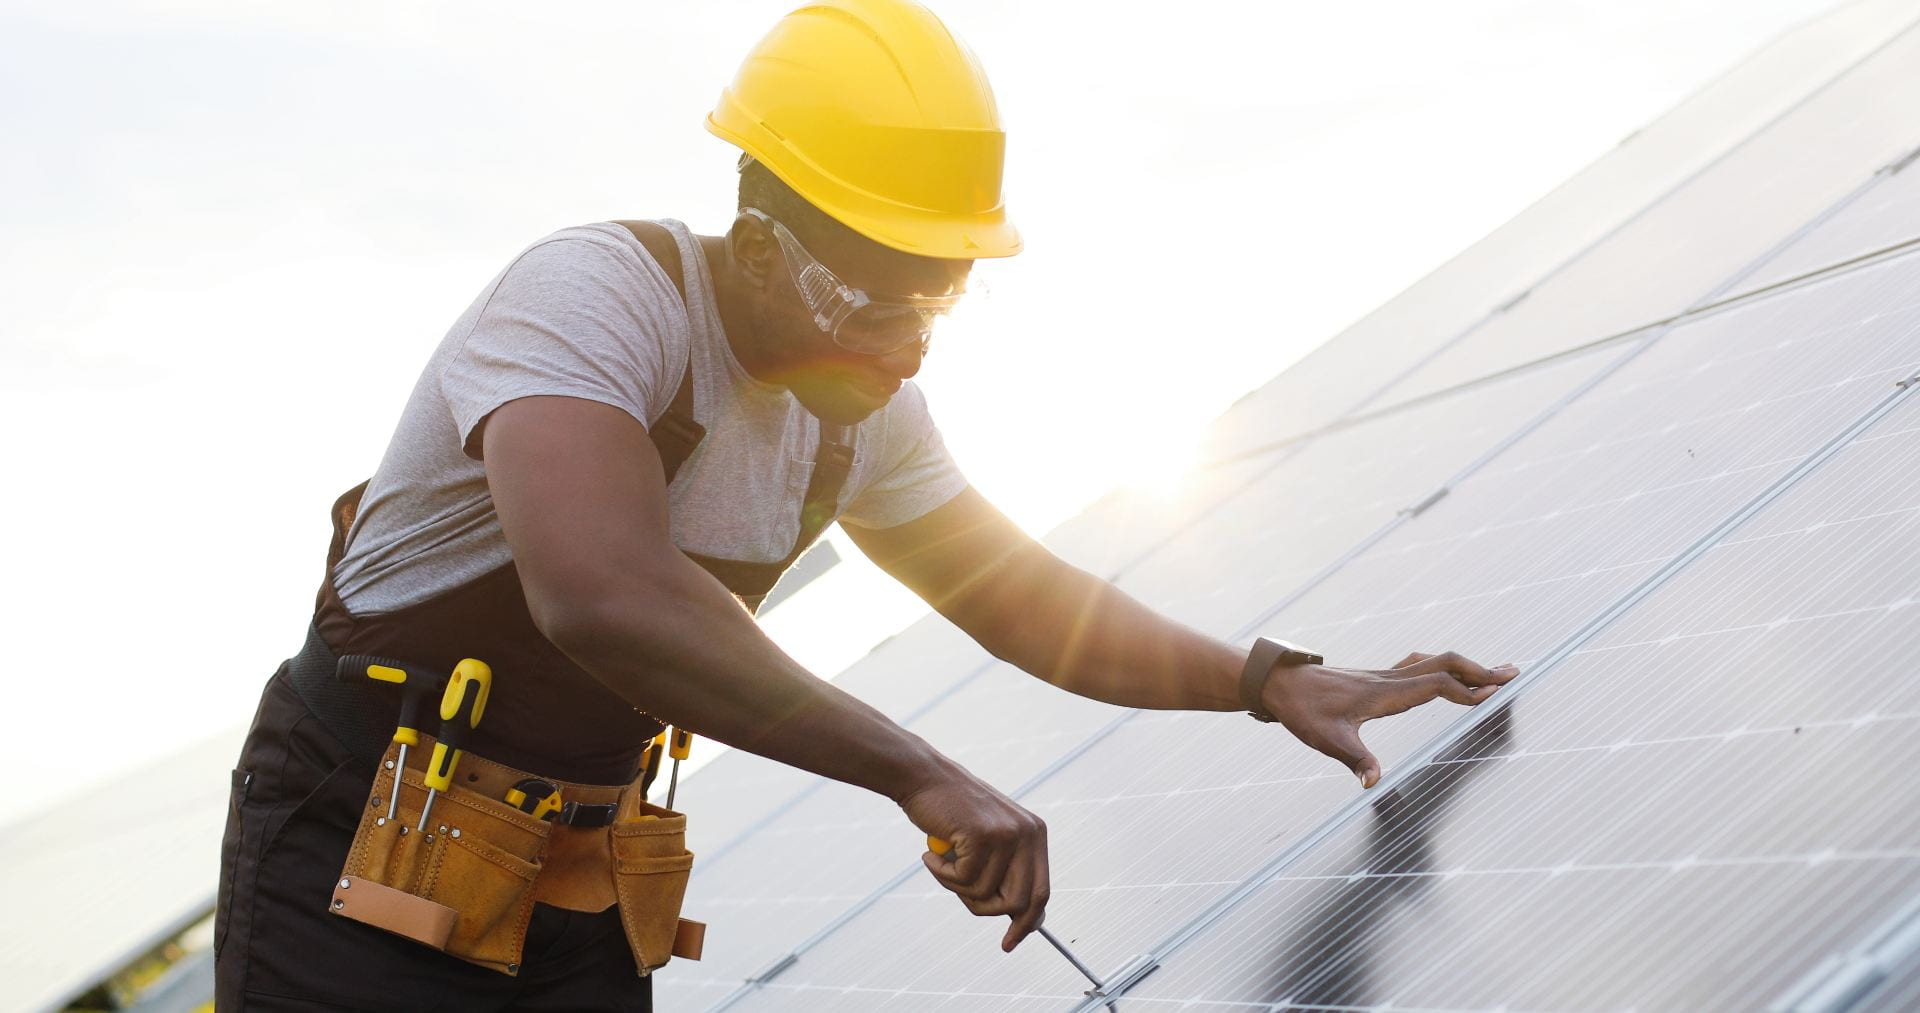 Man using a screwdriver to affix a solar panel. Credit: VAKS-Stock Agency/https://shutterstock.com